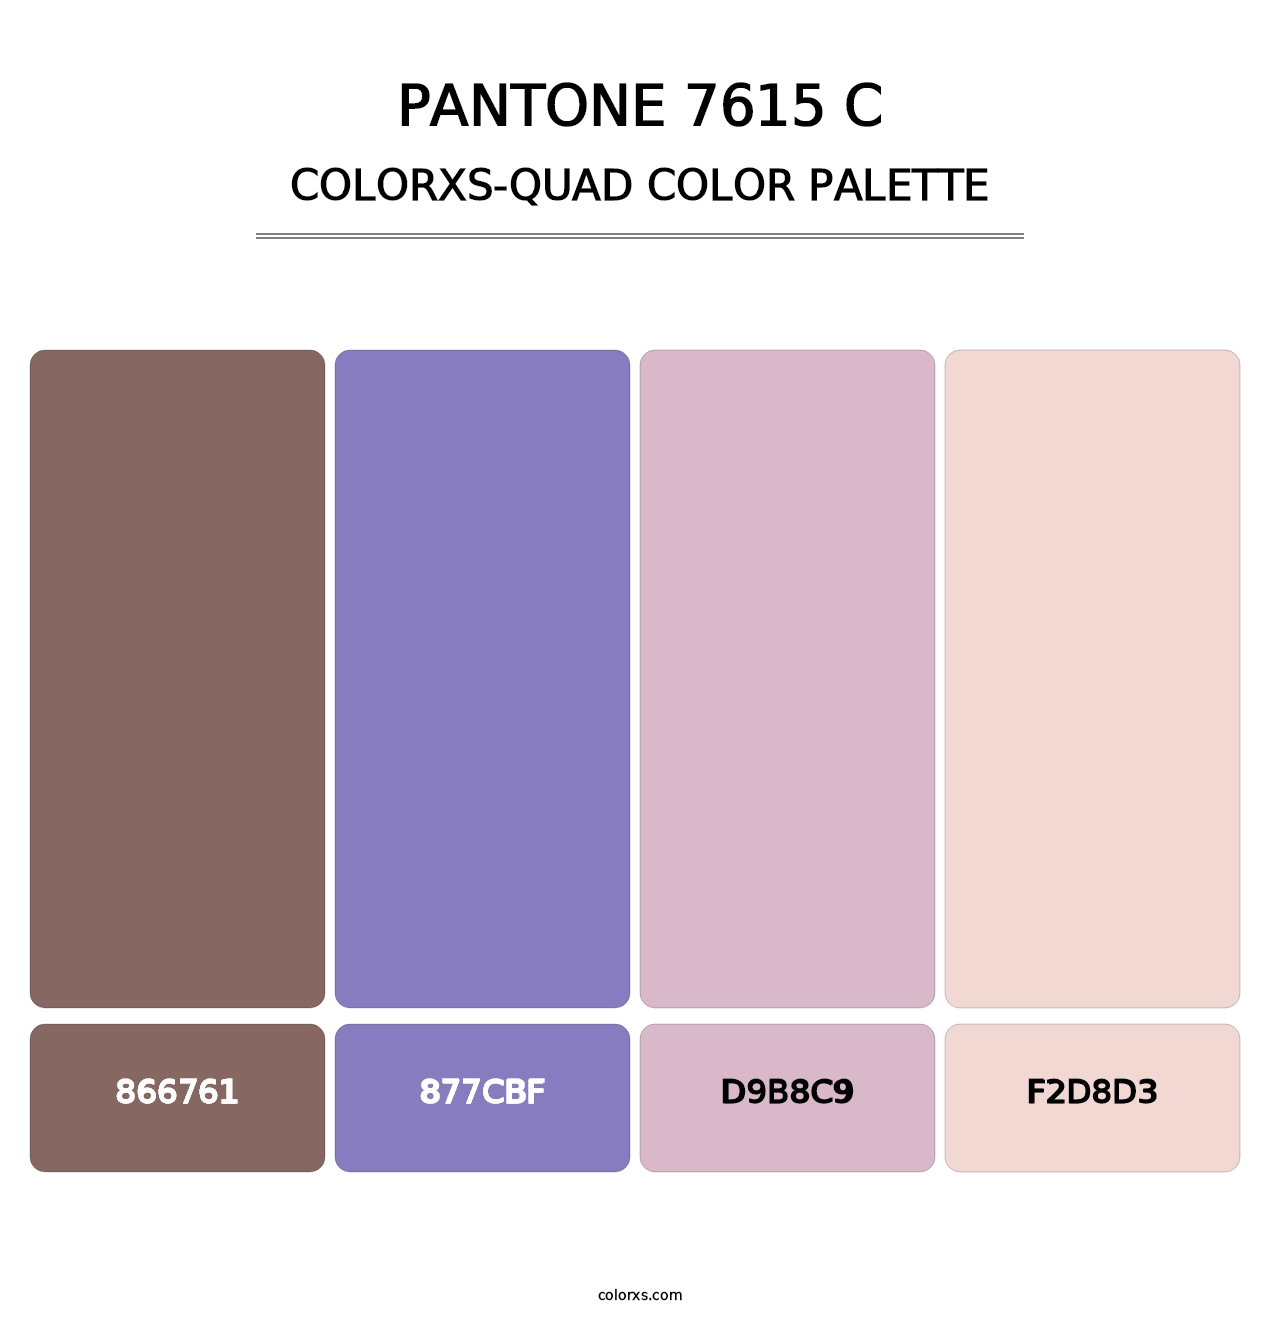 PANTONE 7615 C - Colorxs Quad Palette